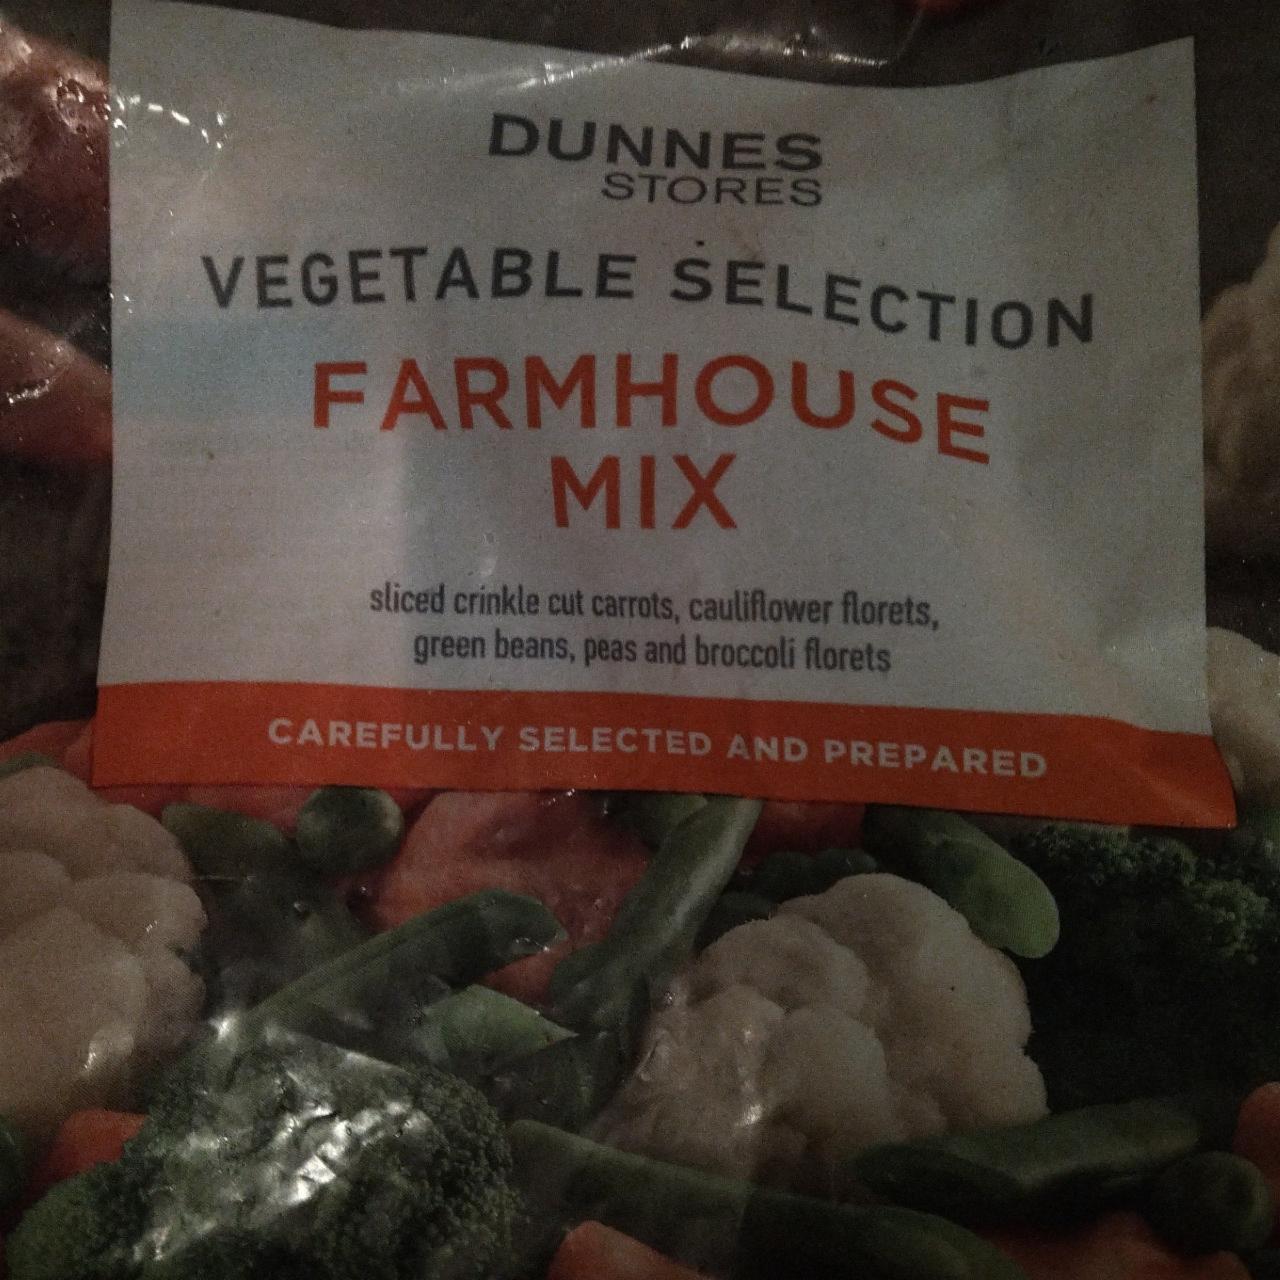 Fotografie - farmhouse mix vegetable selection Dunnes stores